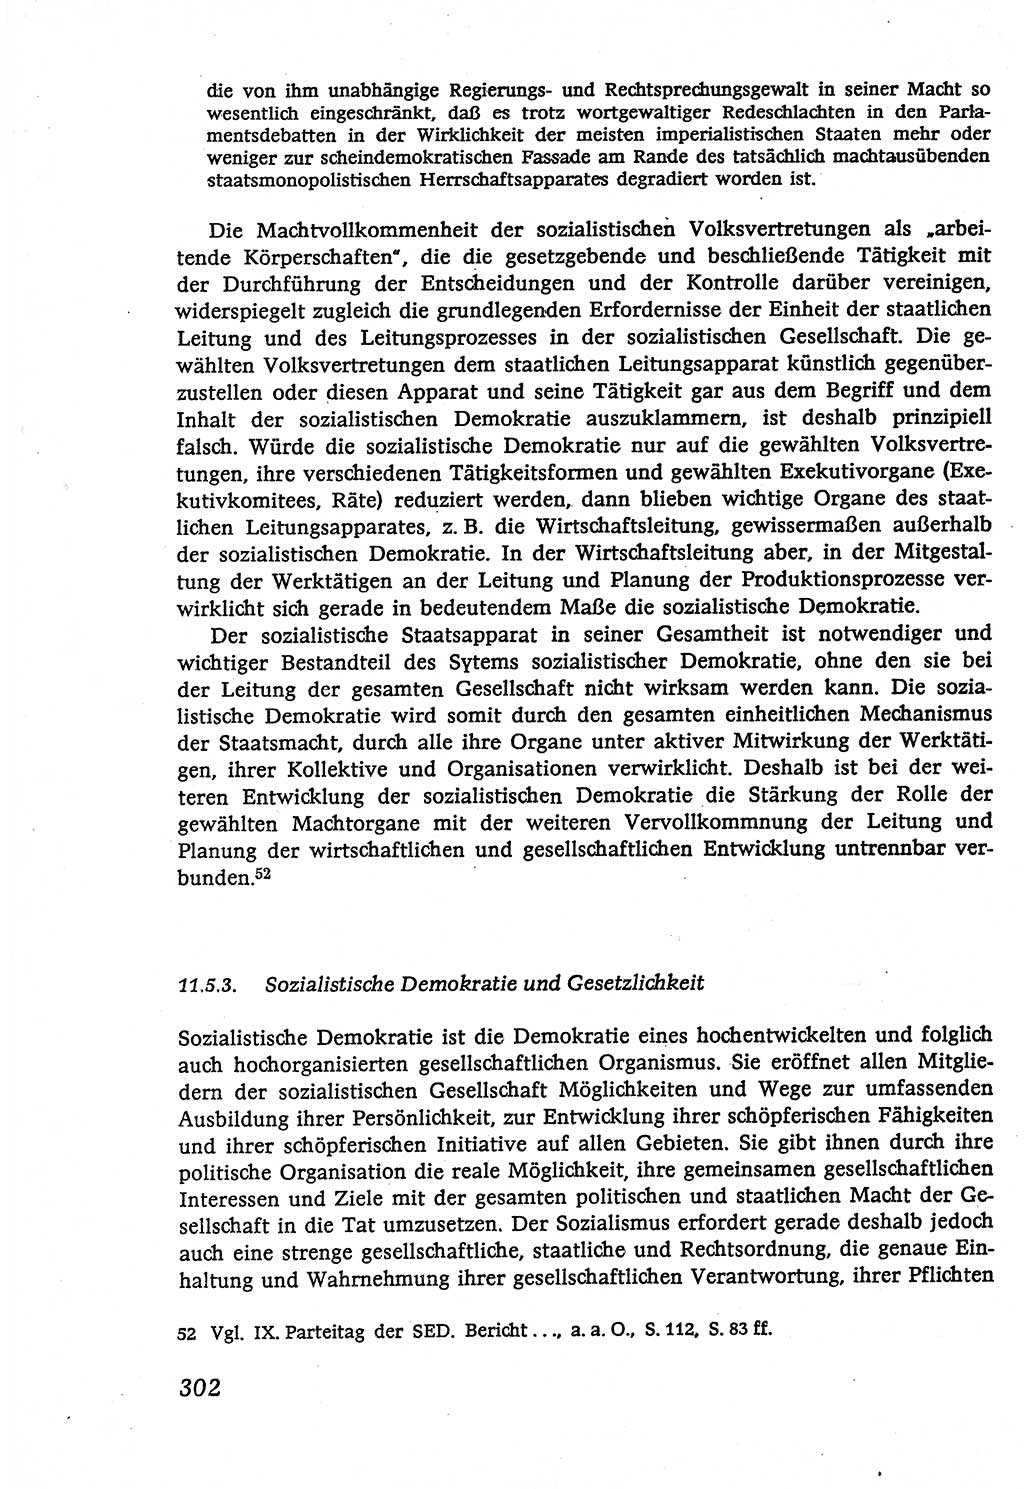 Marxistisch-leninistische (ML) Staats- und Rechtstheorie [Deutsche Demokratische Republik (DDR)], Lehrbuch 1980, Seite 302 (ML St.-R.-Th. DDR Lb. 1980, S. 302)